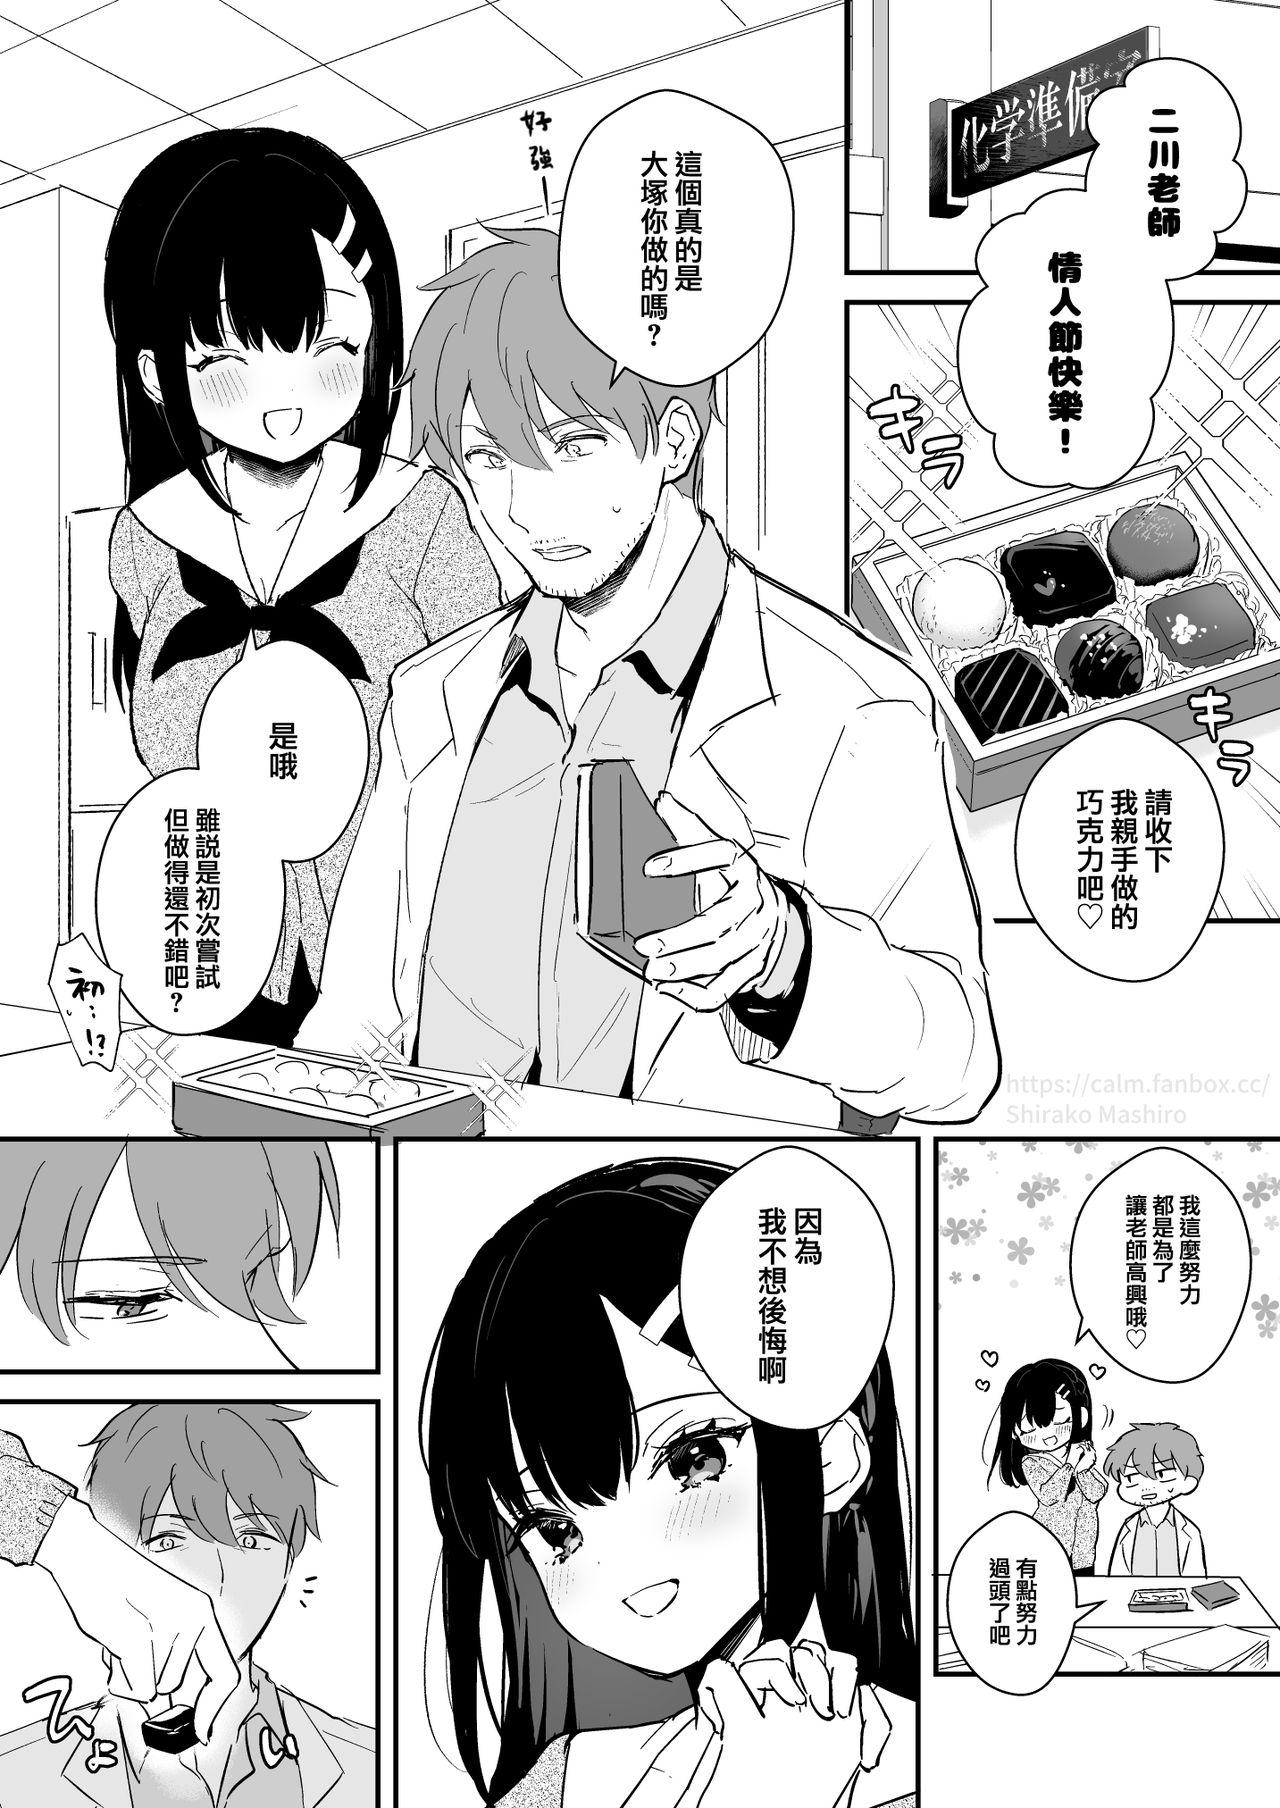 Teasing JK Miyako no Valentine Manga Bribe - Page 2